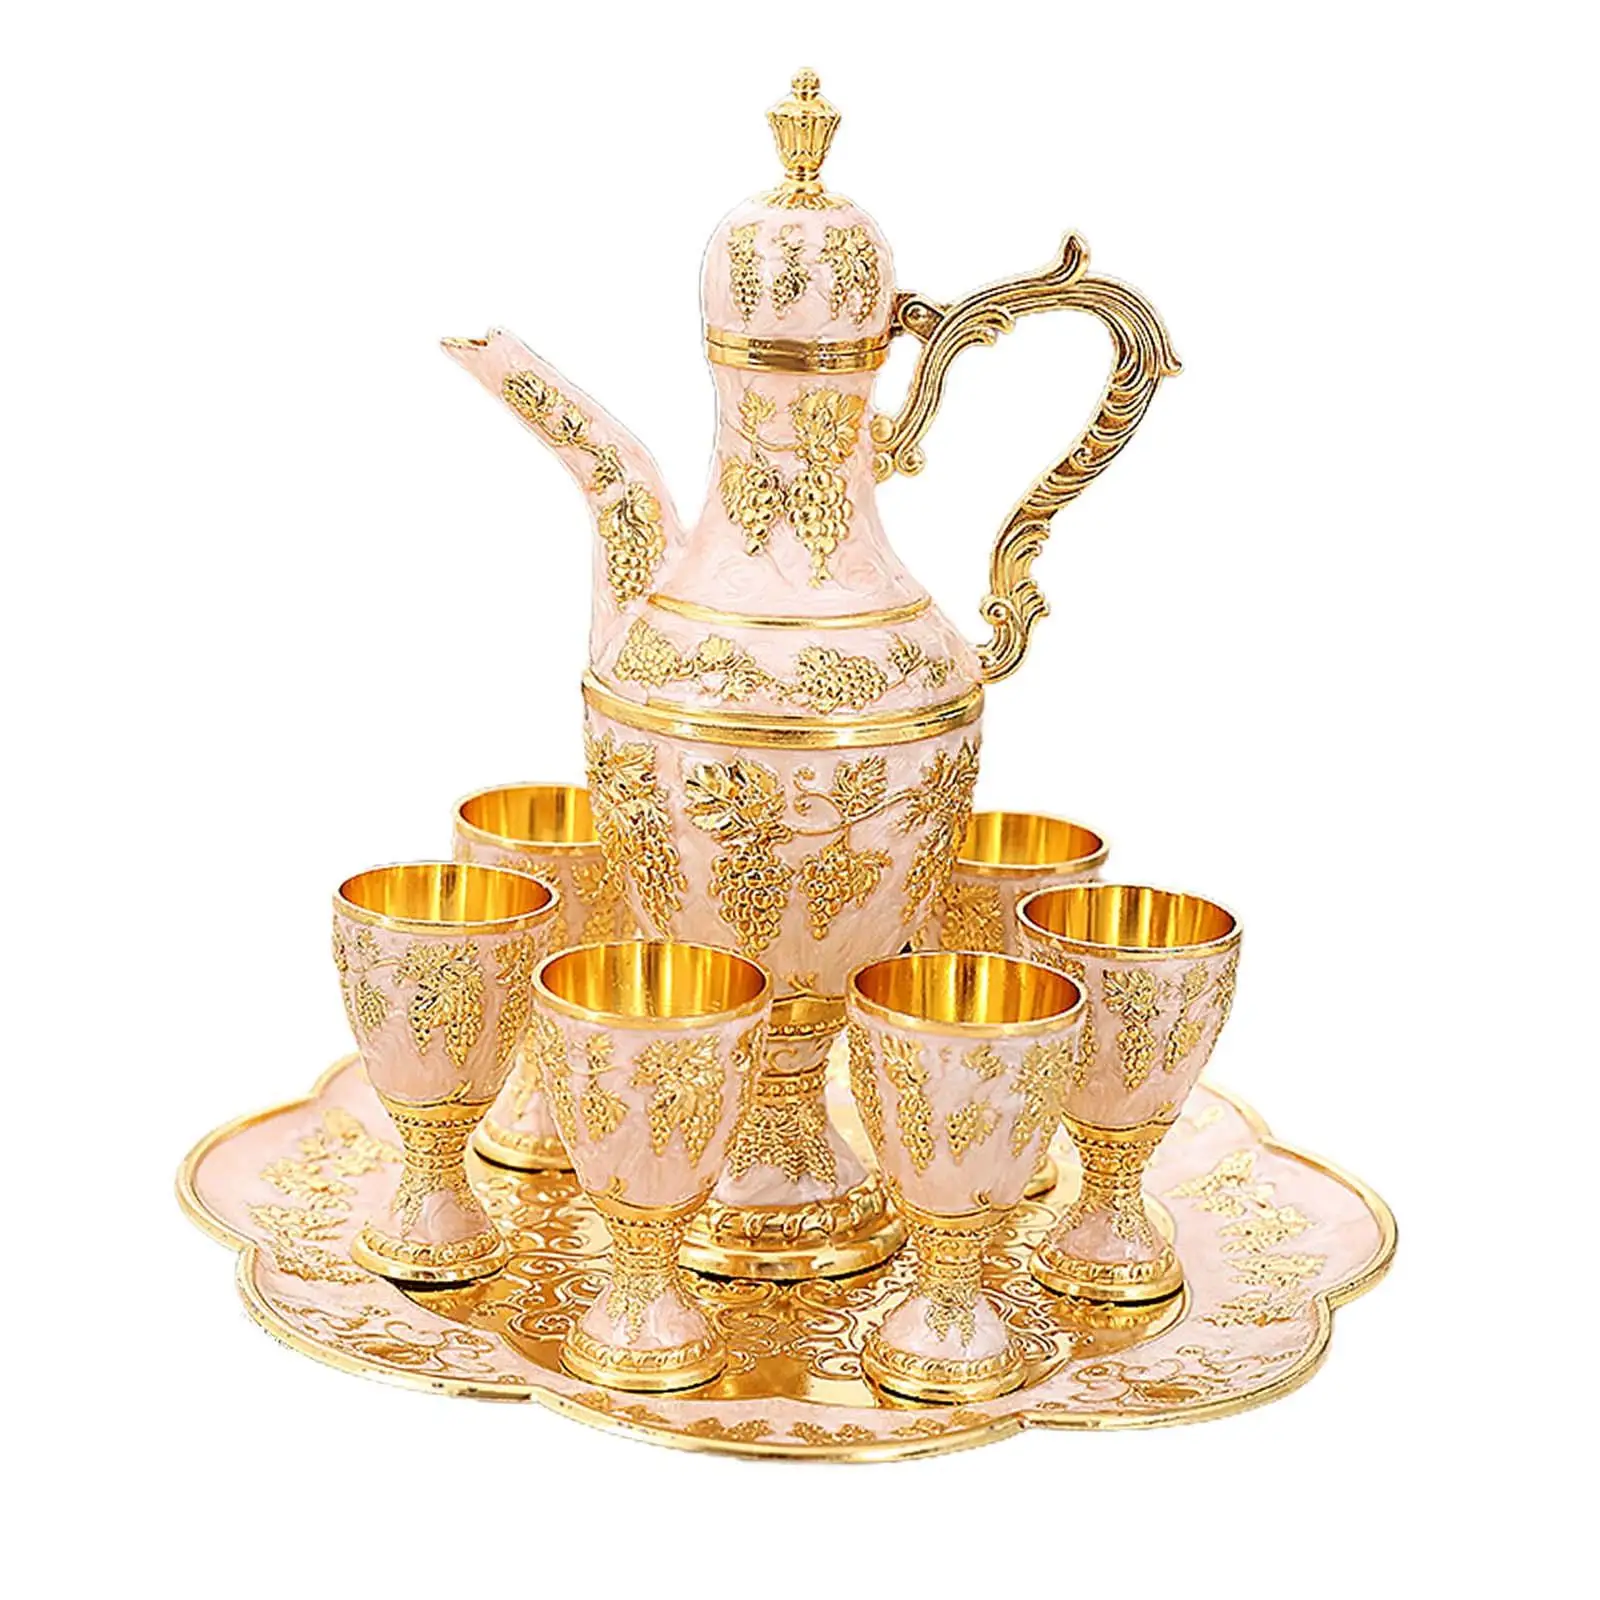 Vintage Teapot Set Home Decorations Decorative turkish Set Metal Wine Glass Jug Set for Room Hotel Gathering Wedding Kitchen